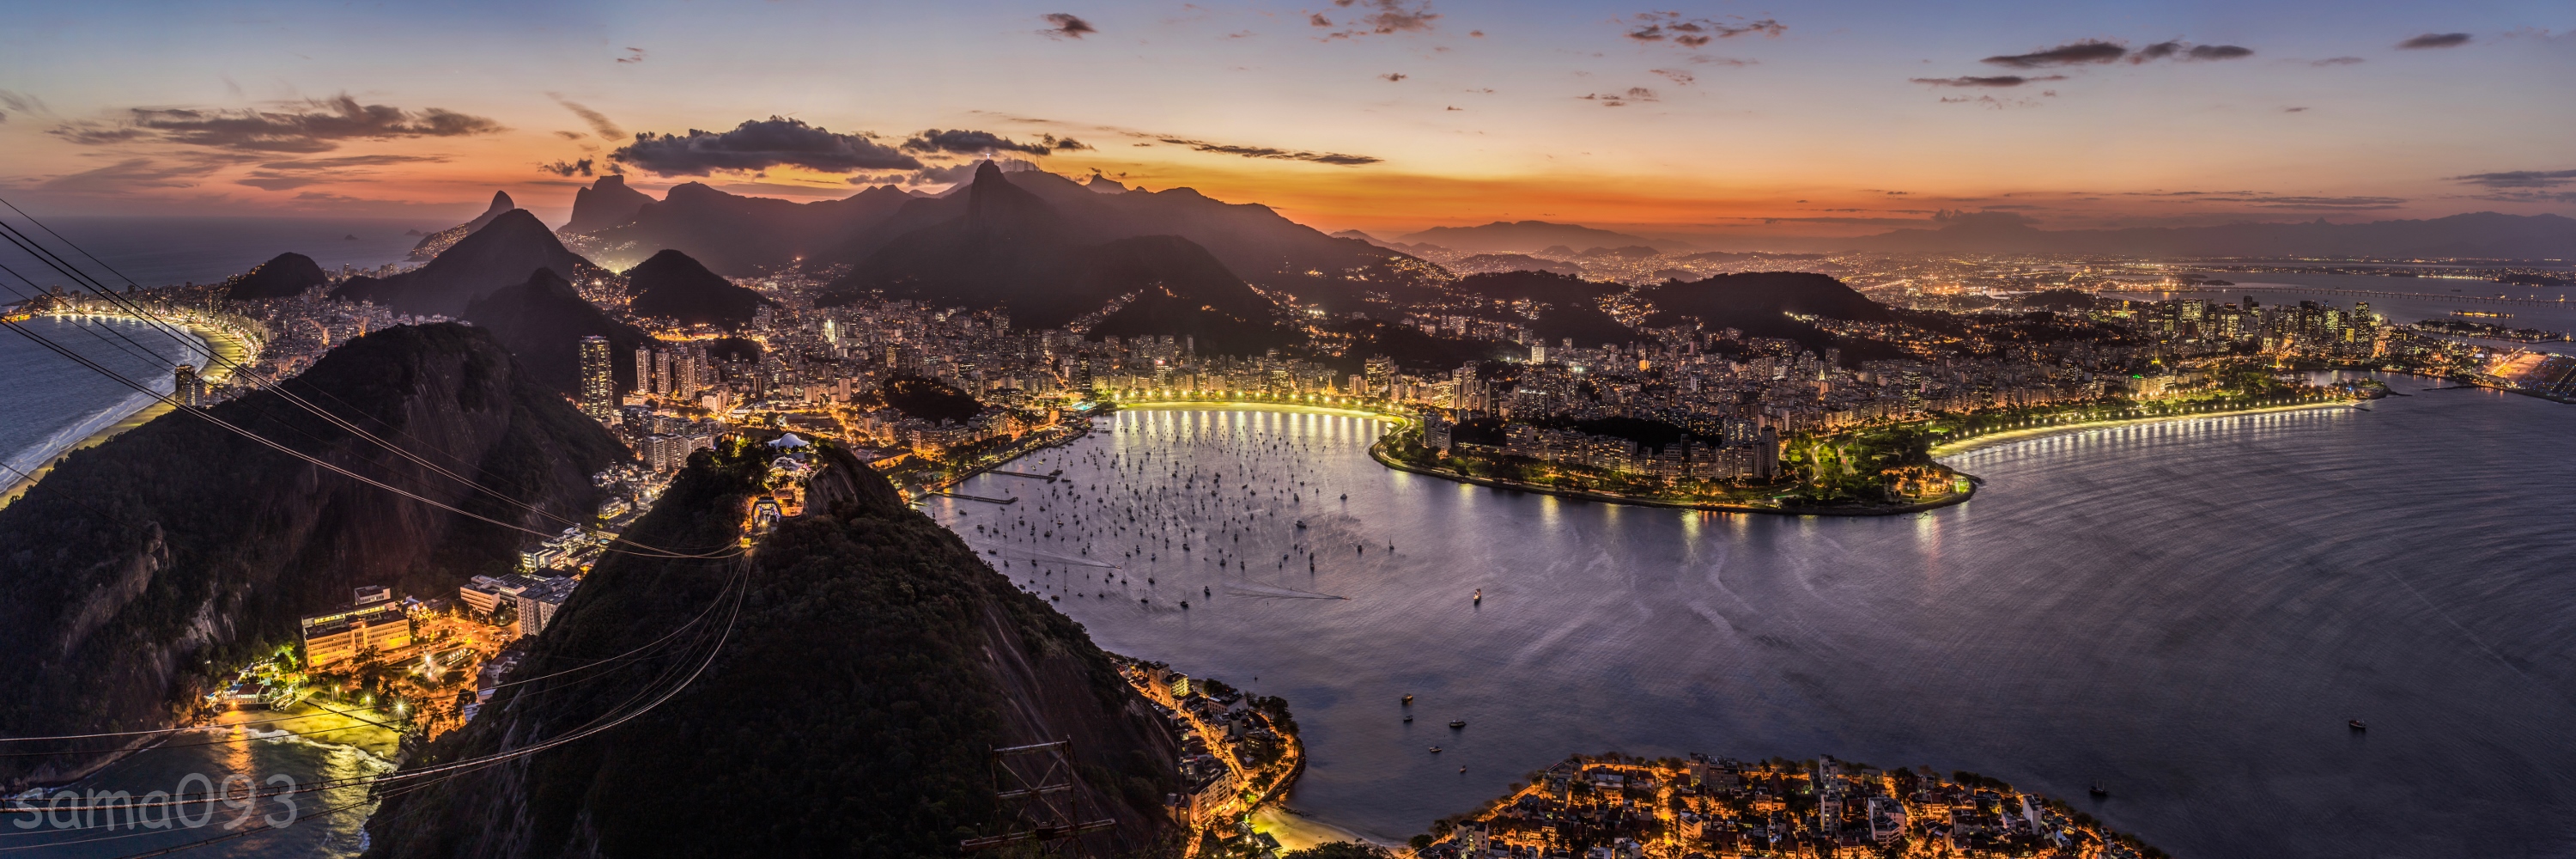 里约热内卢，2016年奥运会的主办地。